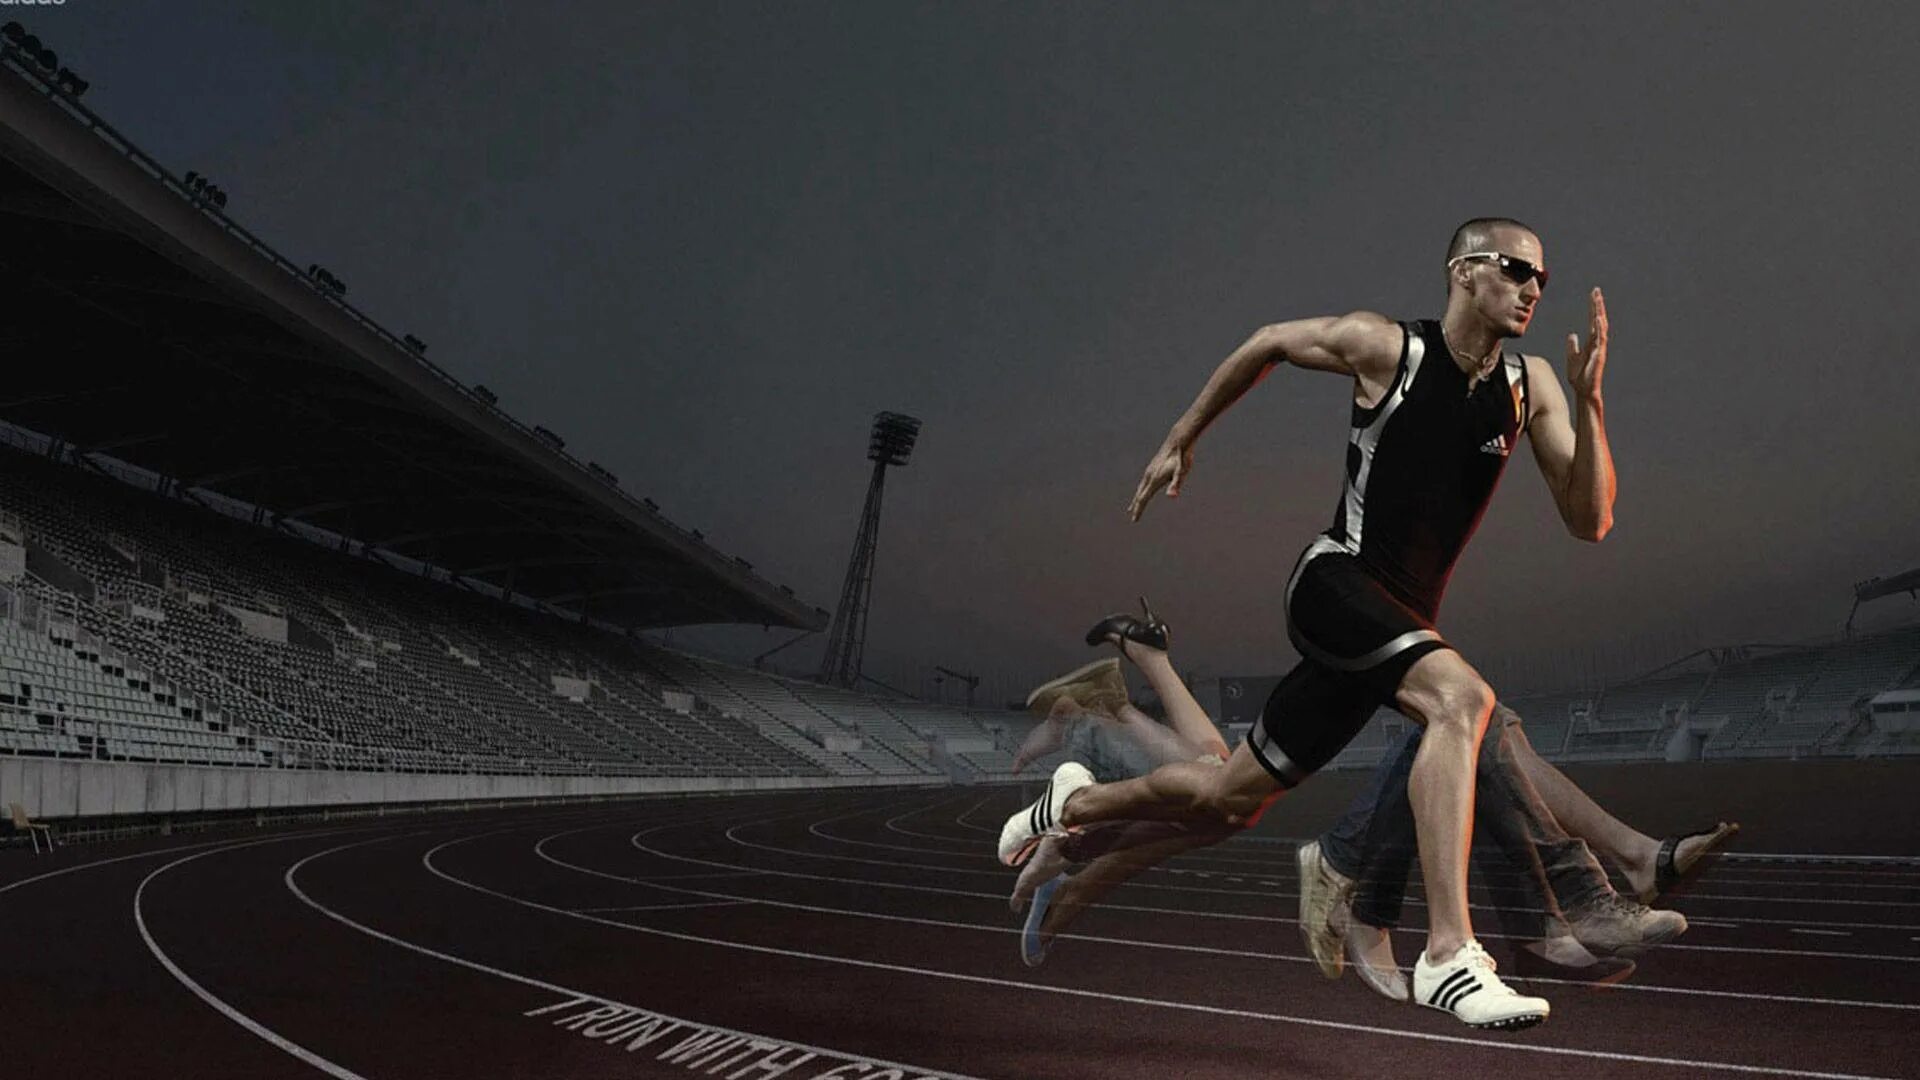 Track effect. Олимпийский бегун Замперини. Спортсмены в движении. Спортсмен бег. Быстрота движения.